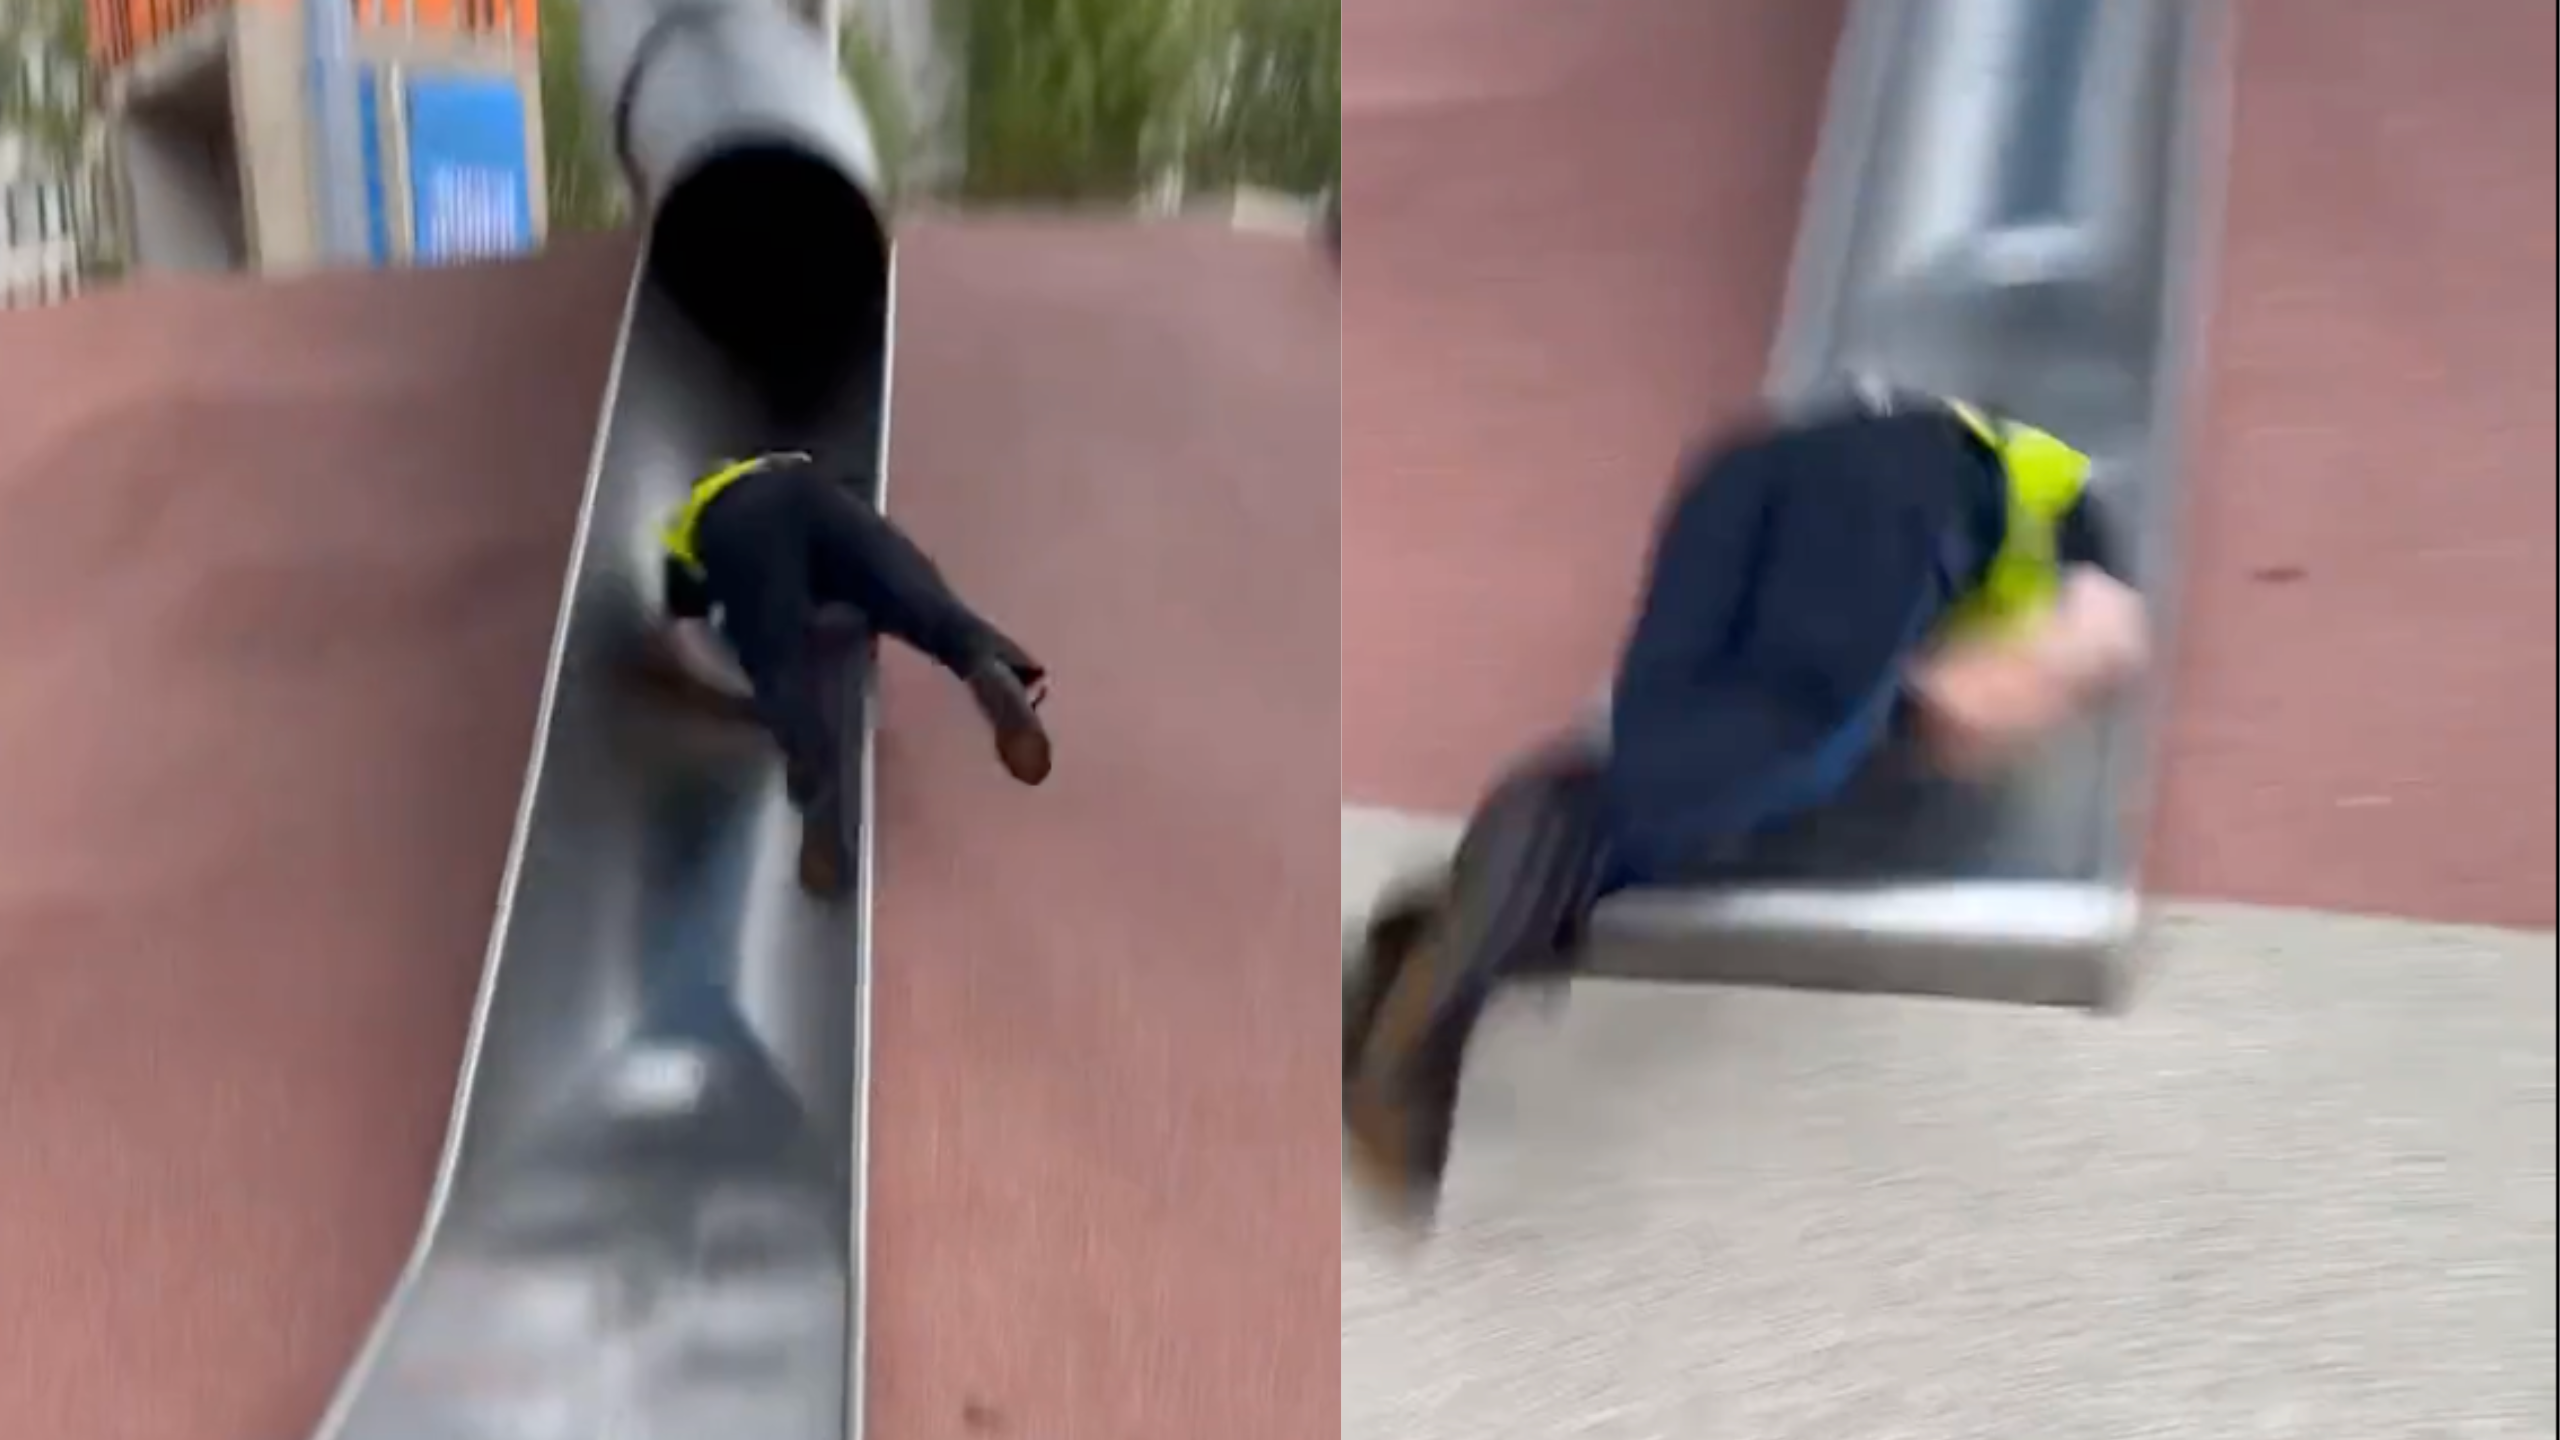 Boston Police Officer Injured Going Down Children's Slide in Viral Video